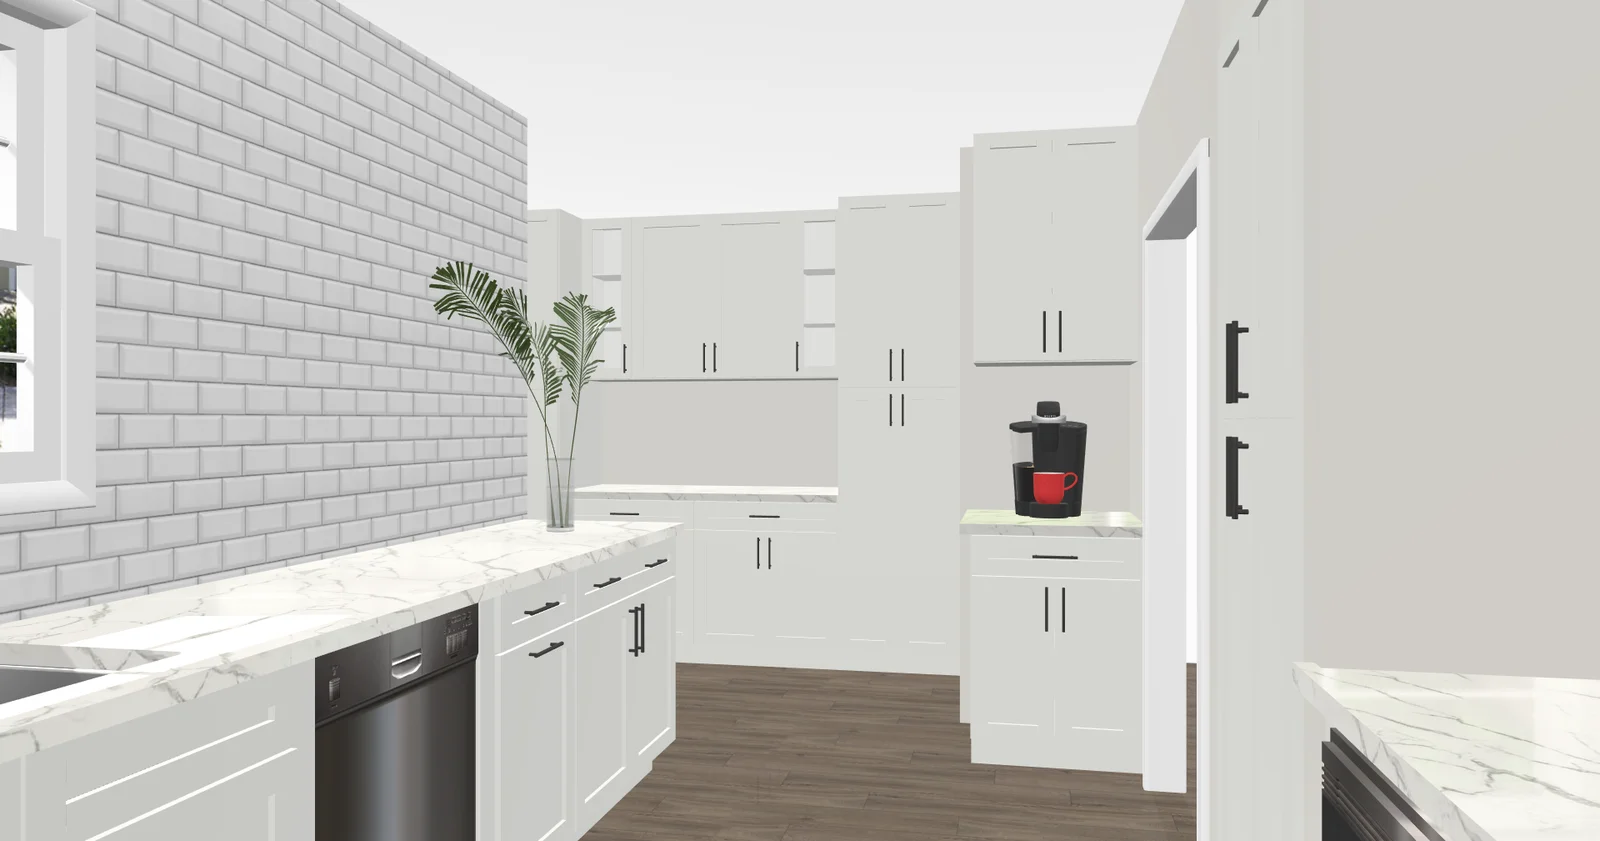 Kitchen design render